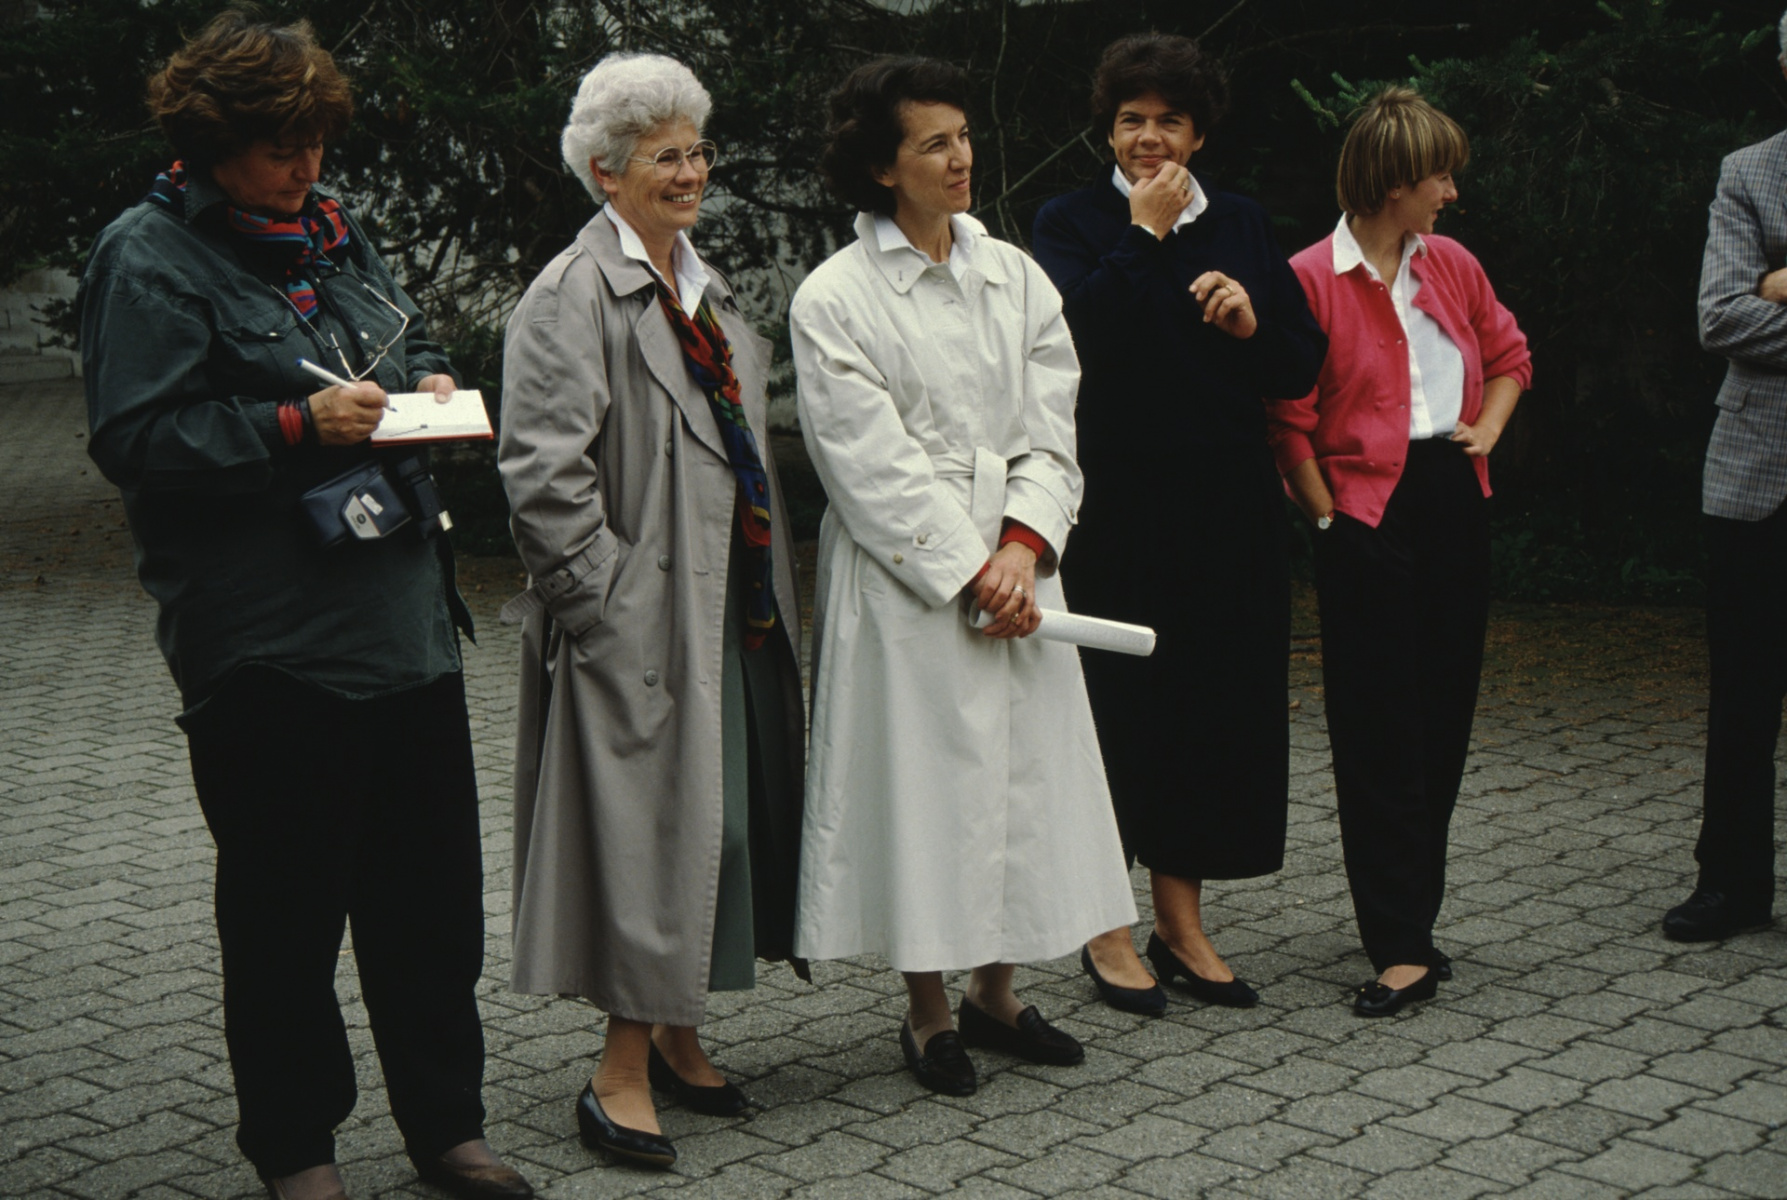 Spatenstich Turnhalle Letten. Liselotte Forster, Esther Brütsch, Anita Frei, Marianne Spörri